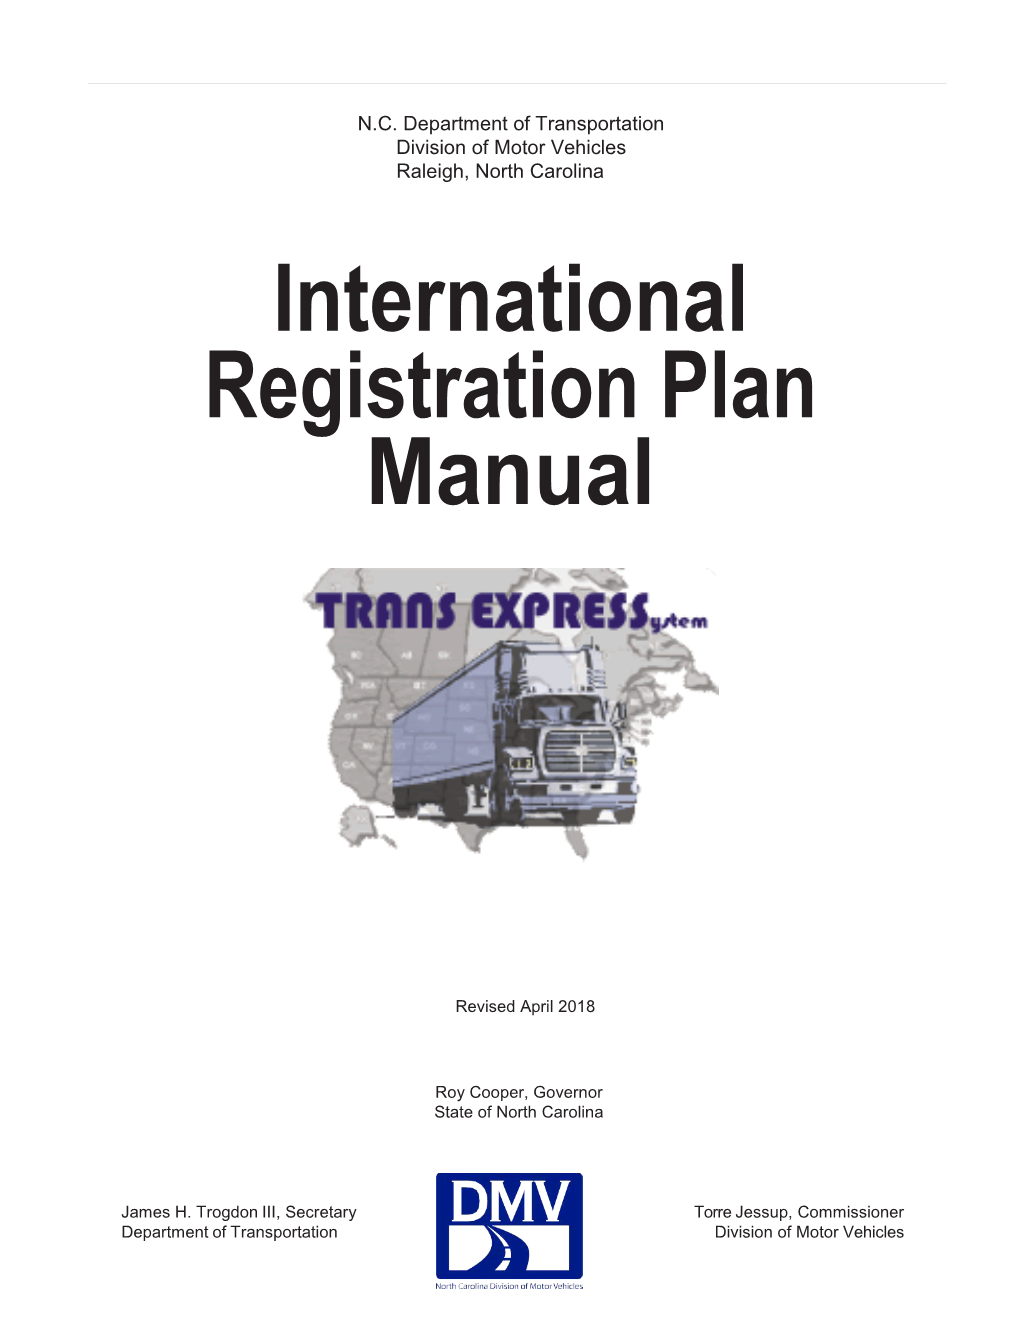 International Registration Plan Manual